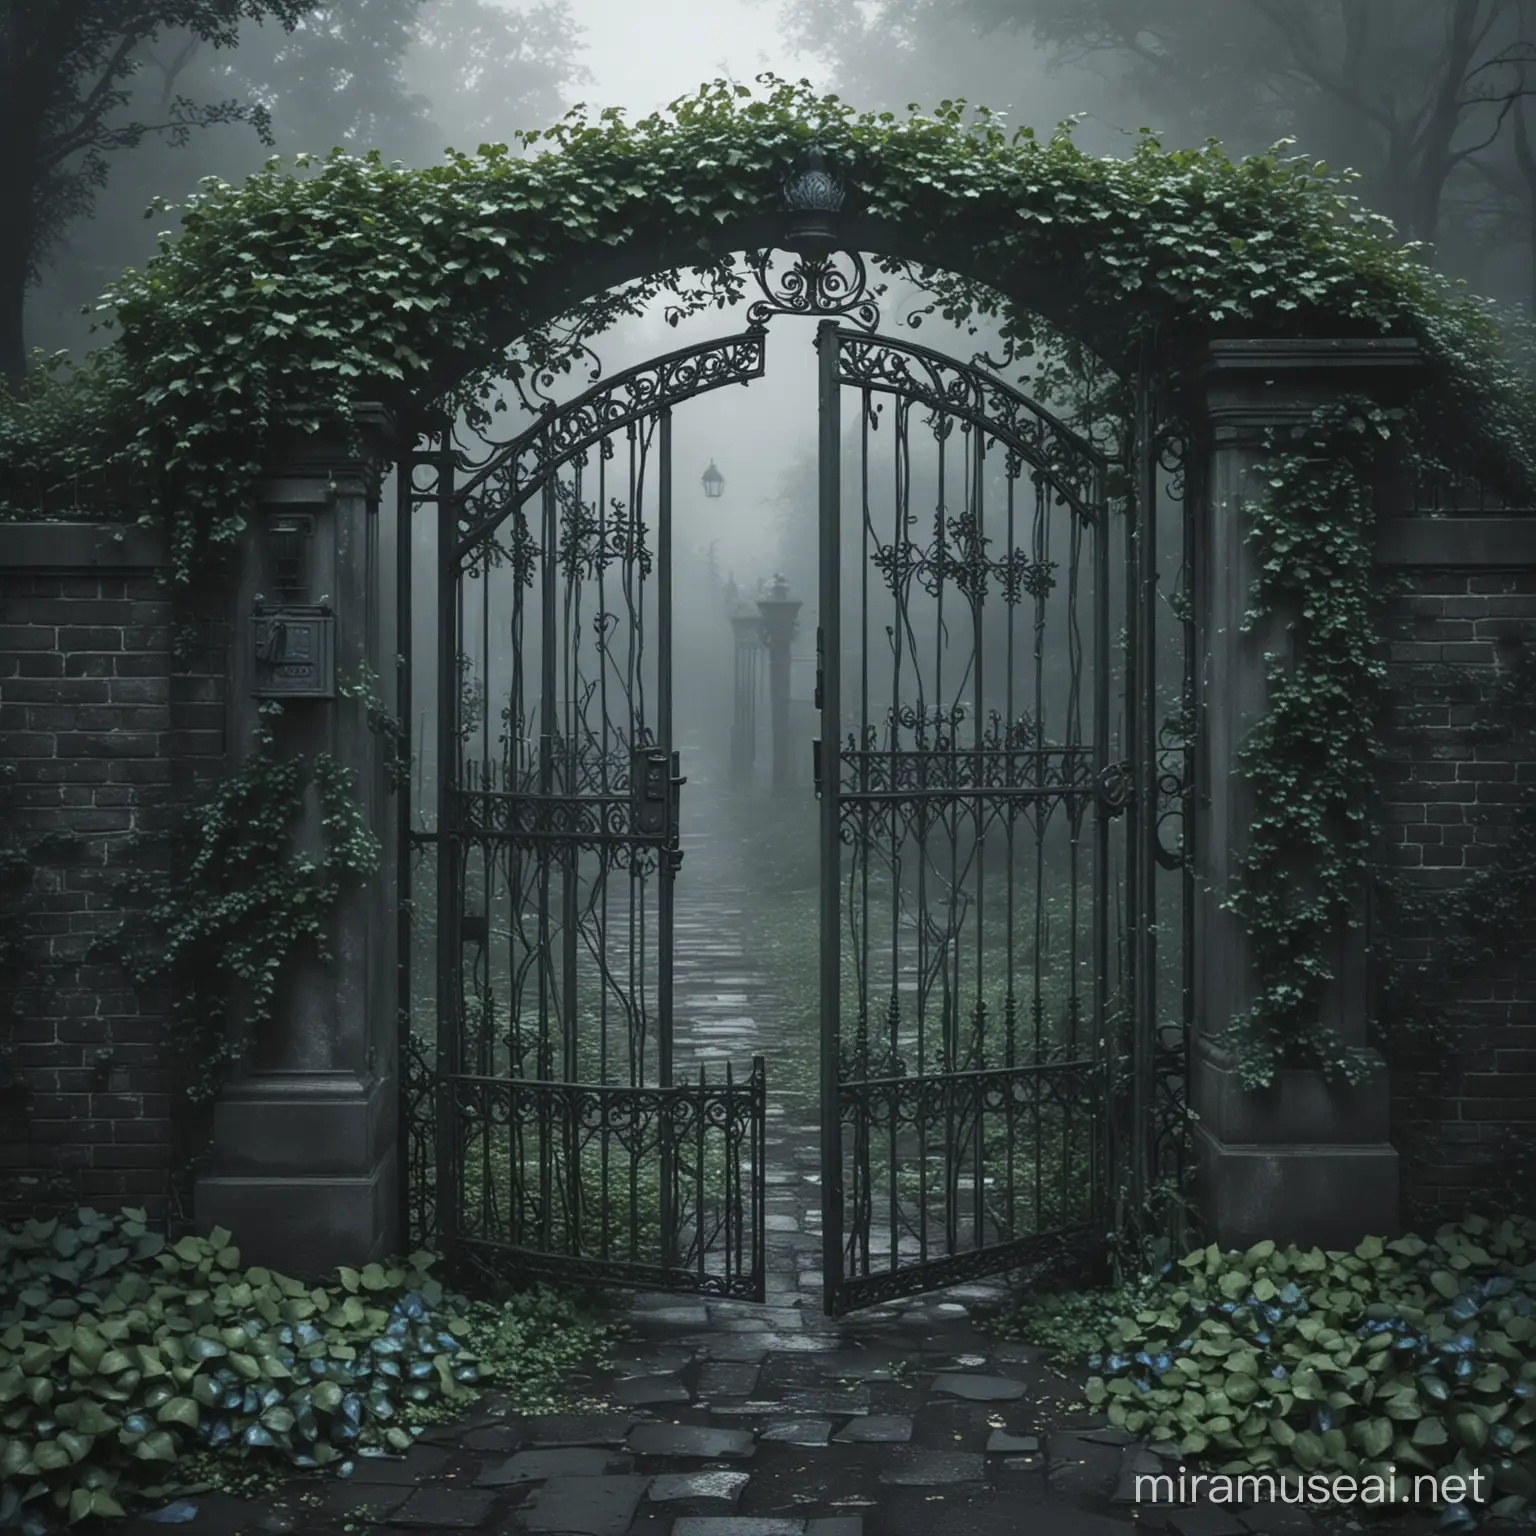 Ethereal Gates of Limbo Mystical Ivy Enshrouded Entrance